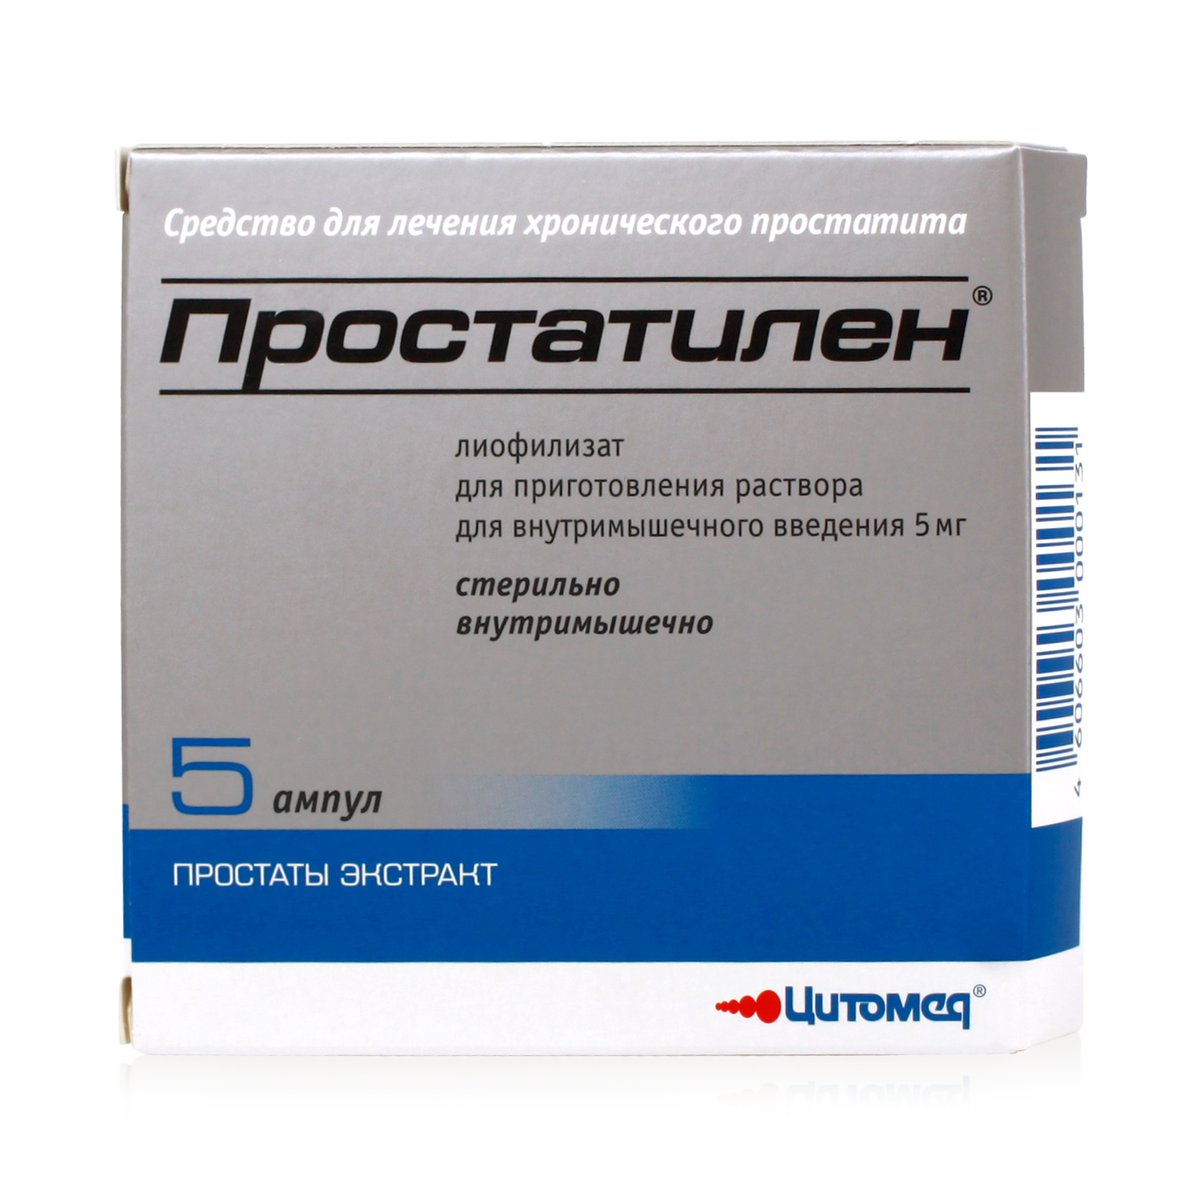 Простатилен (лиофилизат, 5 шт, 5 мг, для приготовления раствора) - цена .